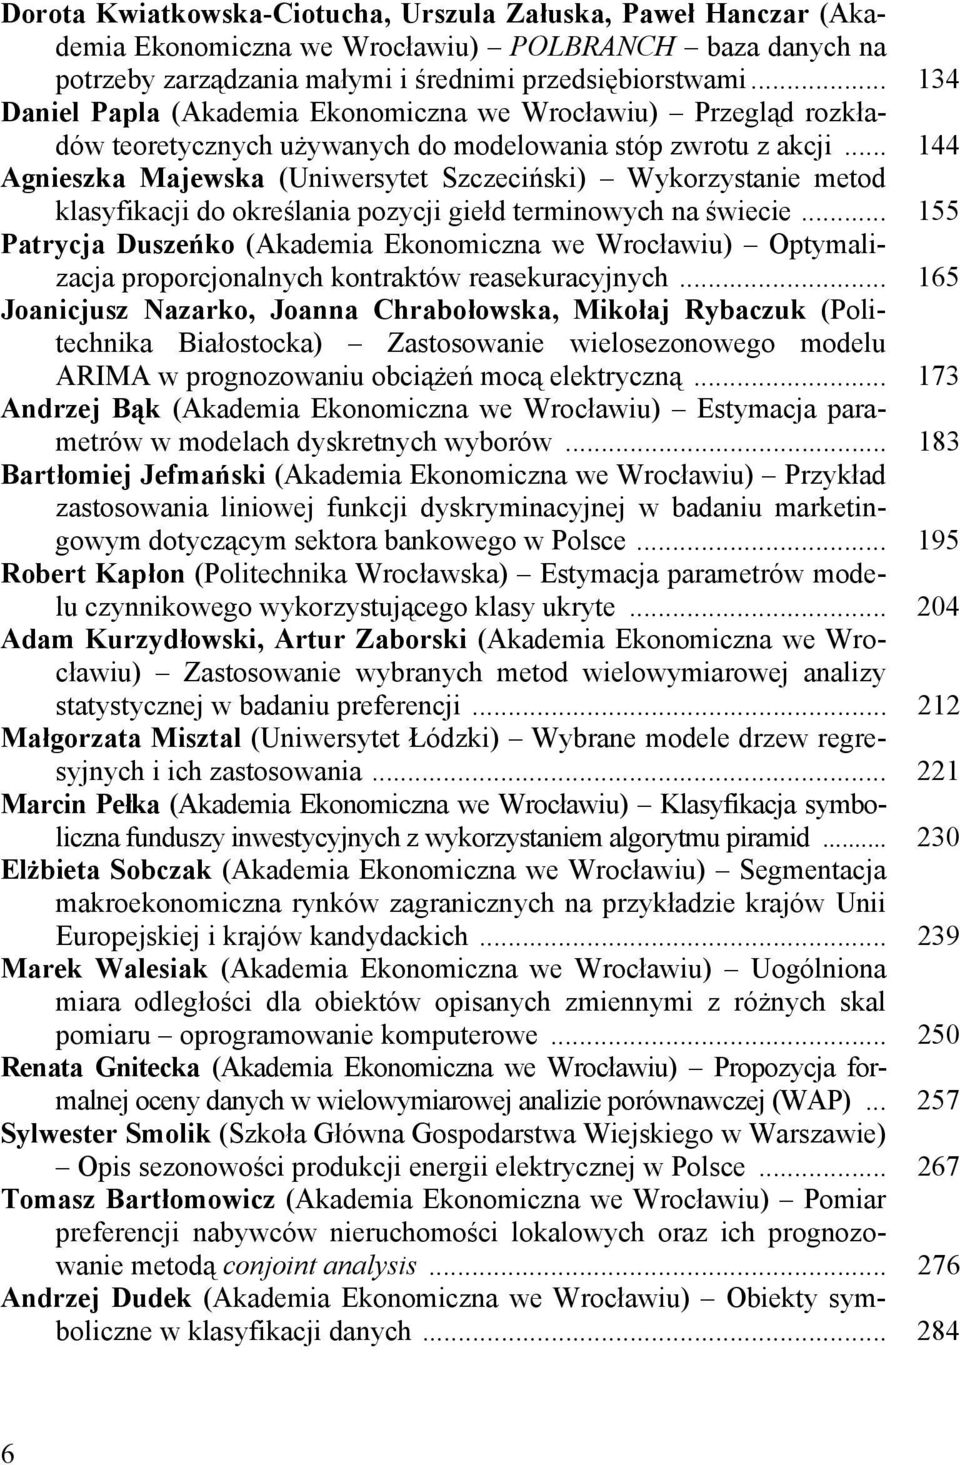 .. 144 Agnieszka Majewska (Uniwersytet Szczeciński) Wykorzystanie metod klasyfikacji do określania pozycji giełd terminowych na świecie.